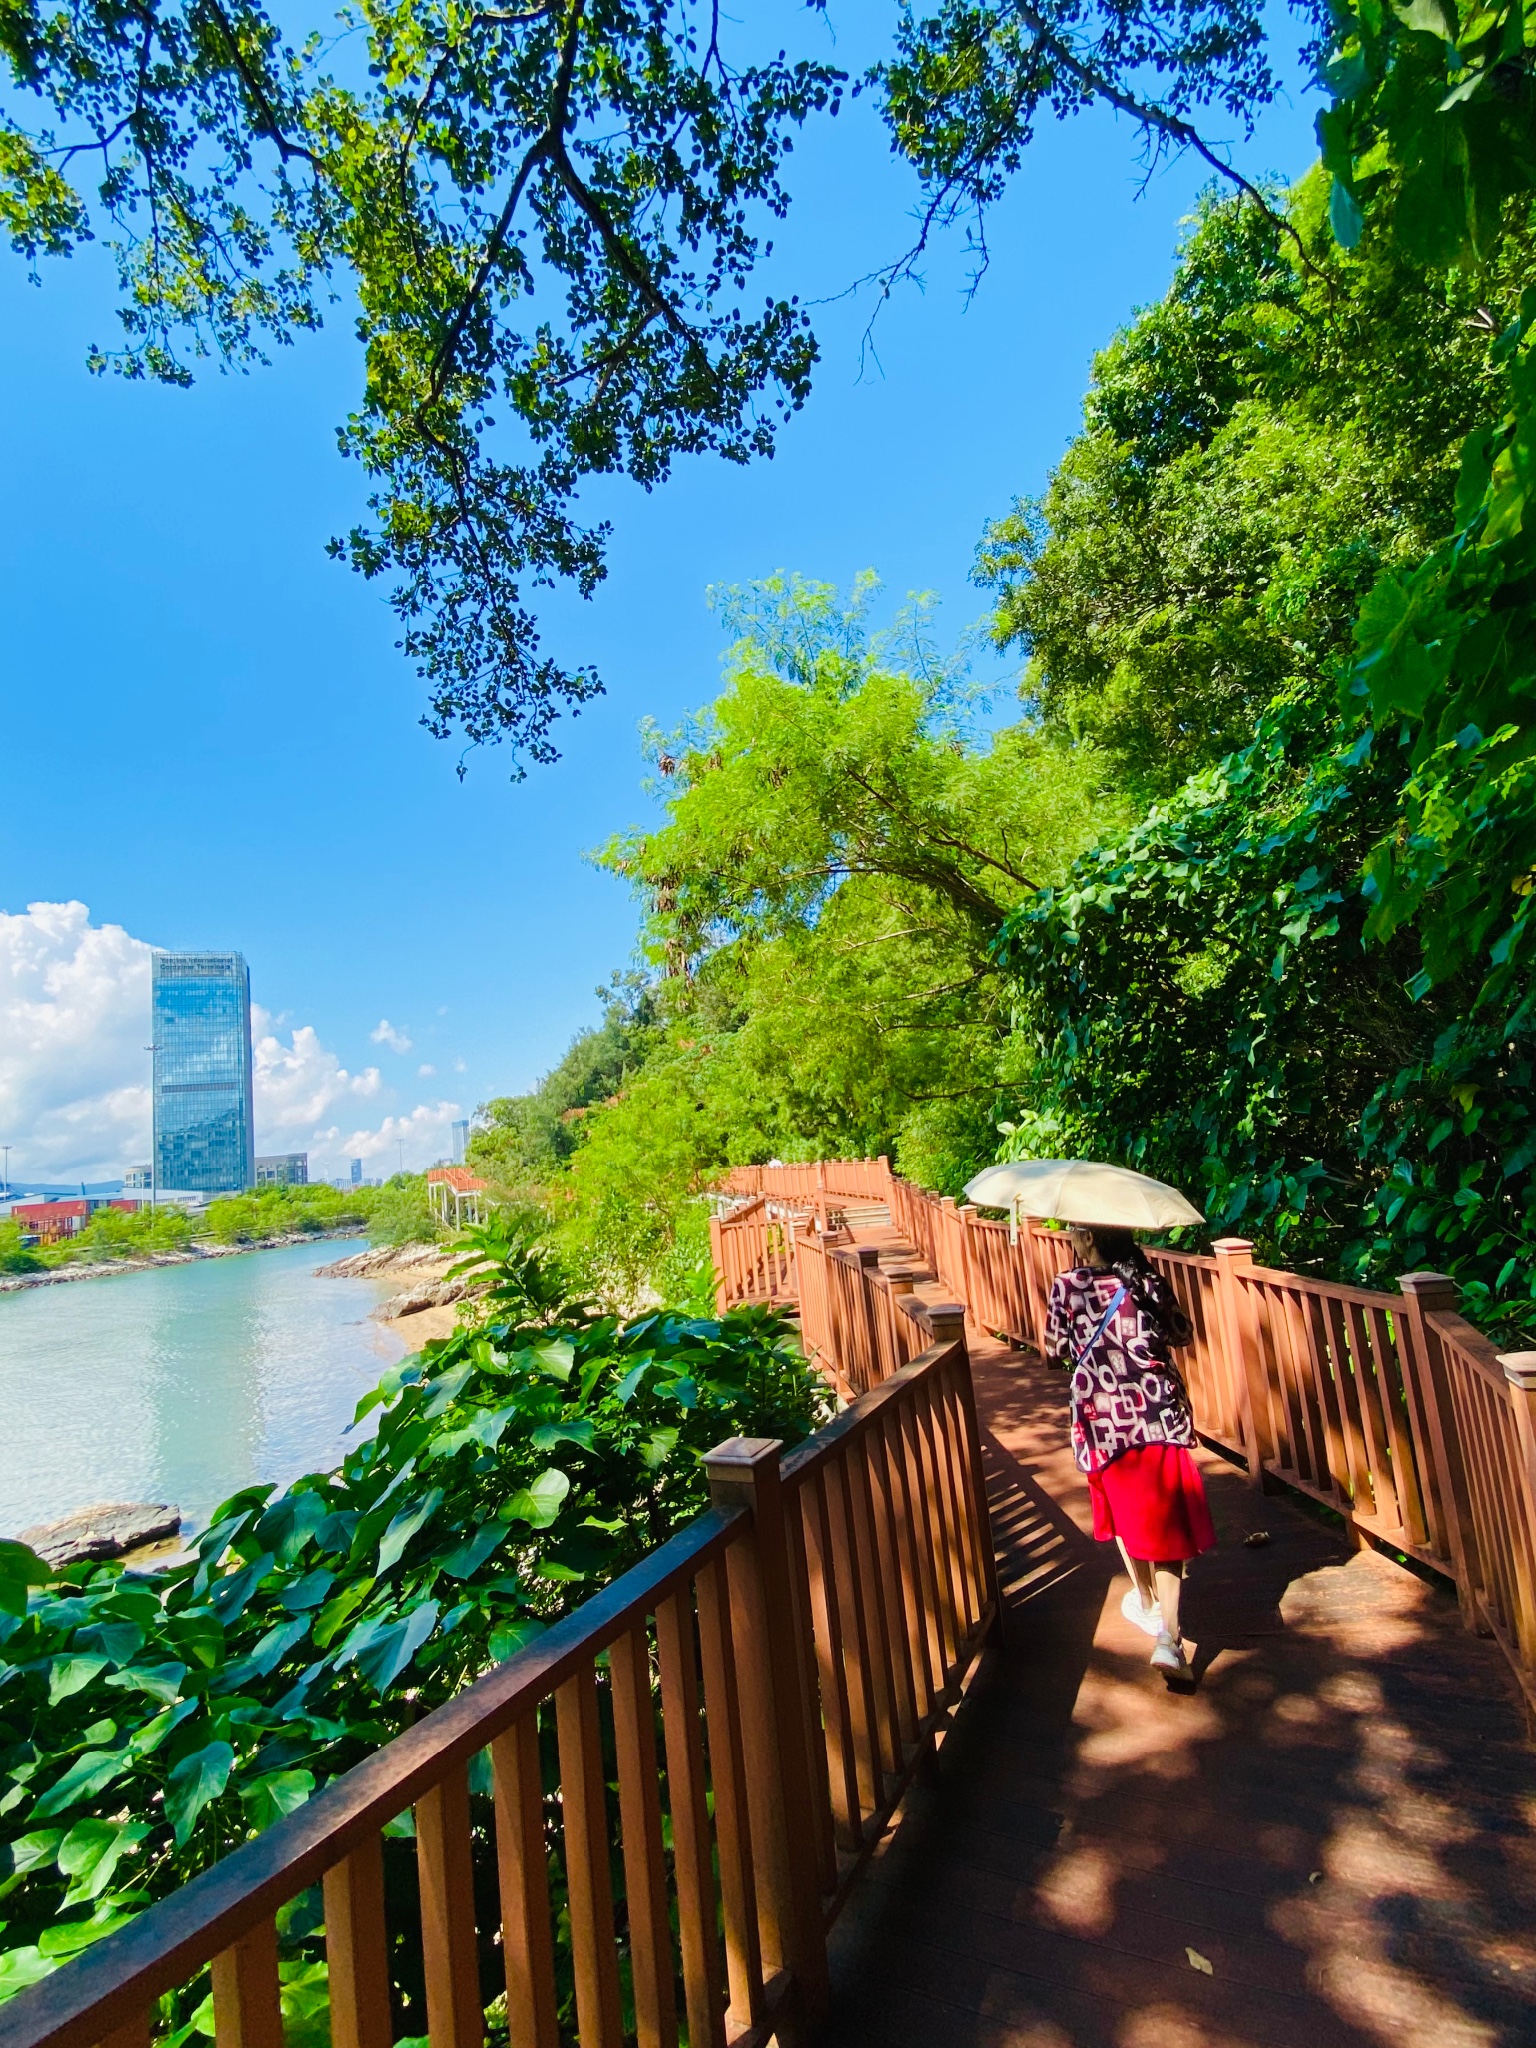 盐田烟墩山公园,是深圳第一个以国际友好为主题的公园,旅游攻略 